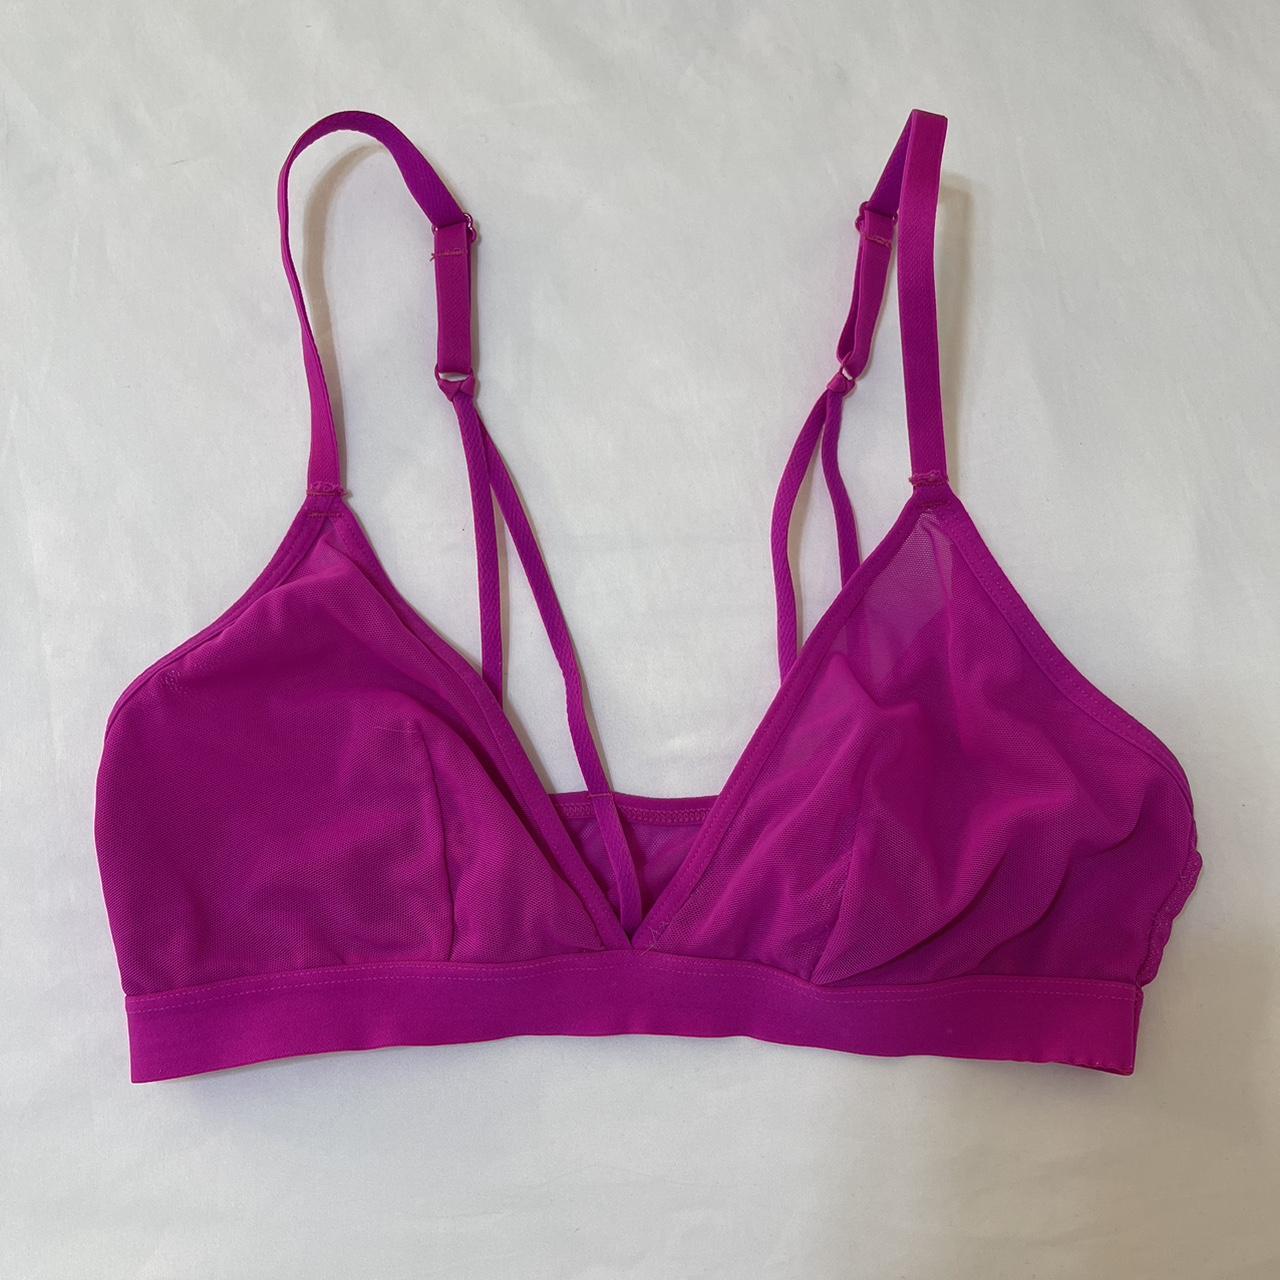 Target hot pink mesh sports bra